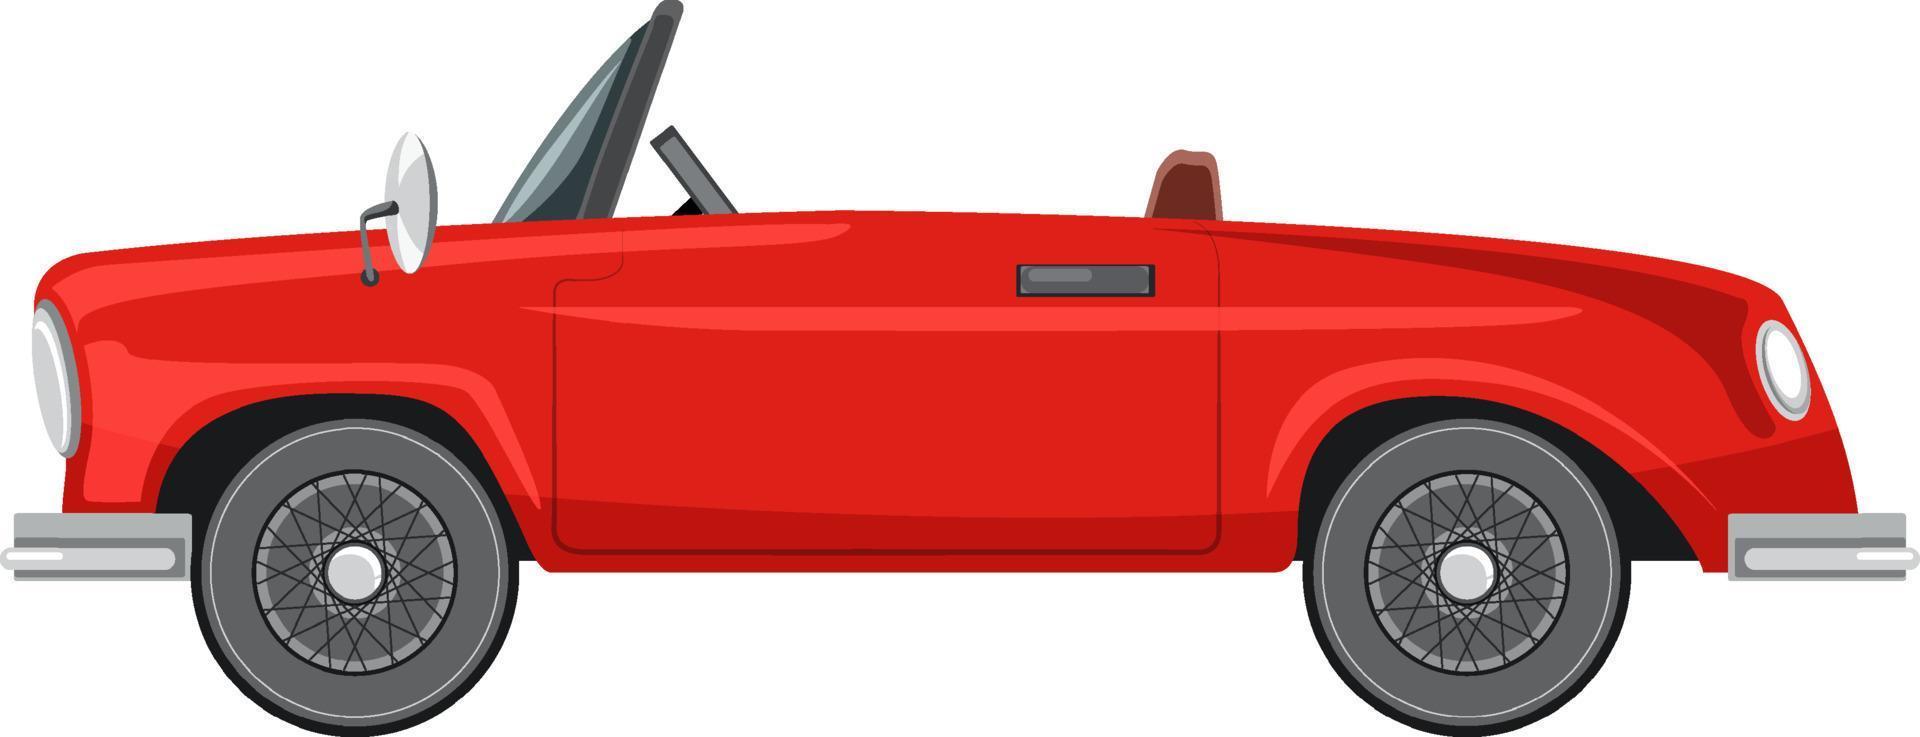 classica macchina rossa in stile cartone animato vettore